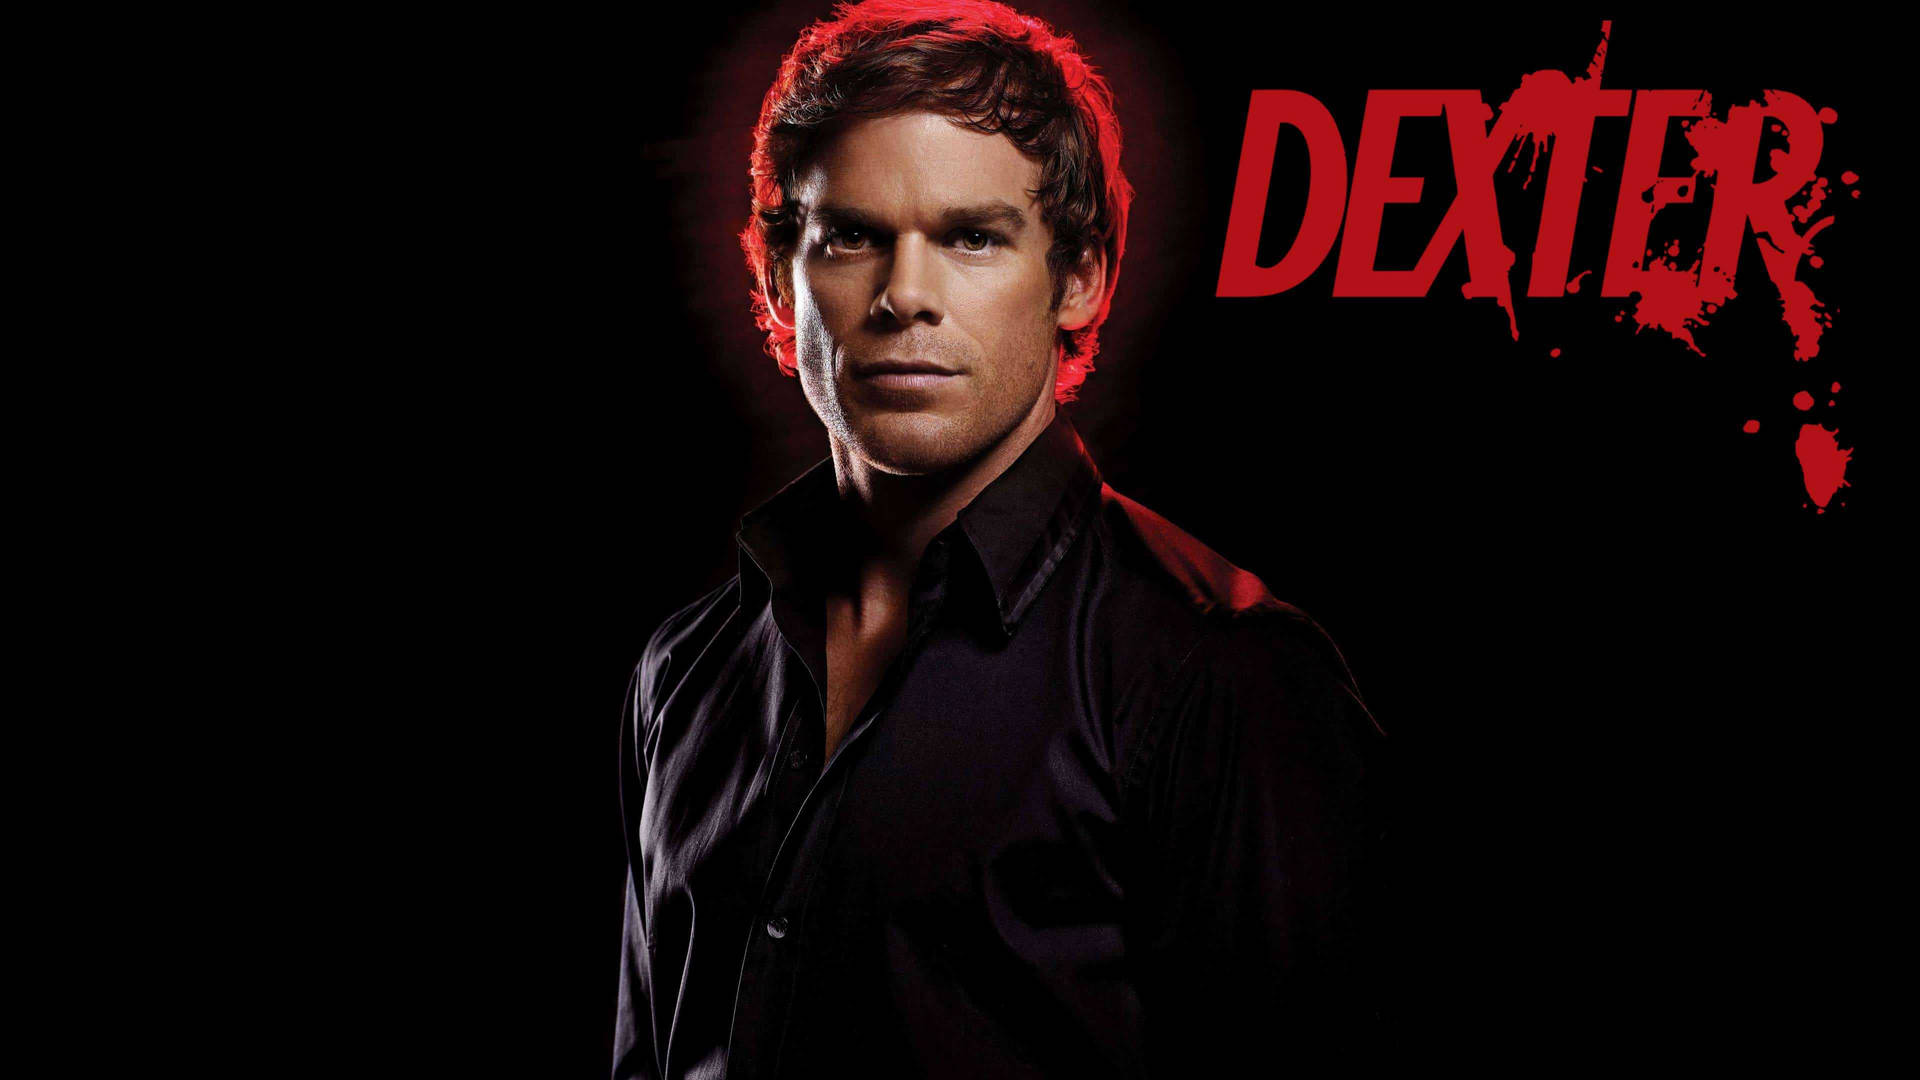 Dexter: The Miami-Based Blood Splatter Expert Wallpaper